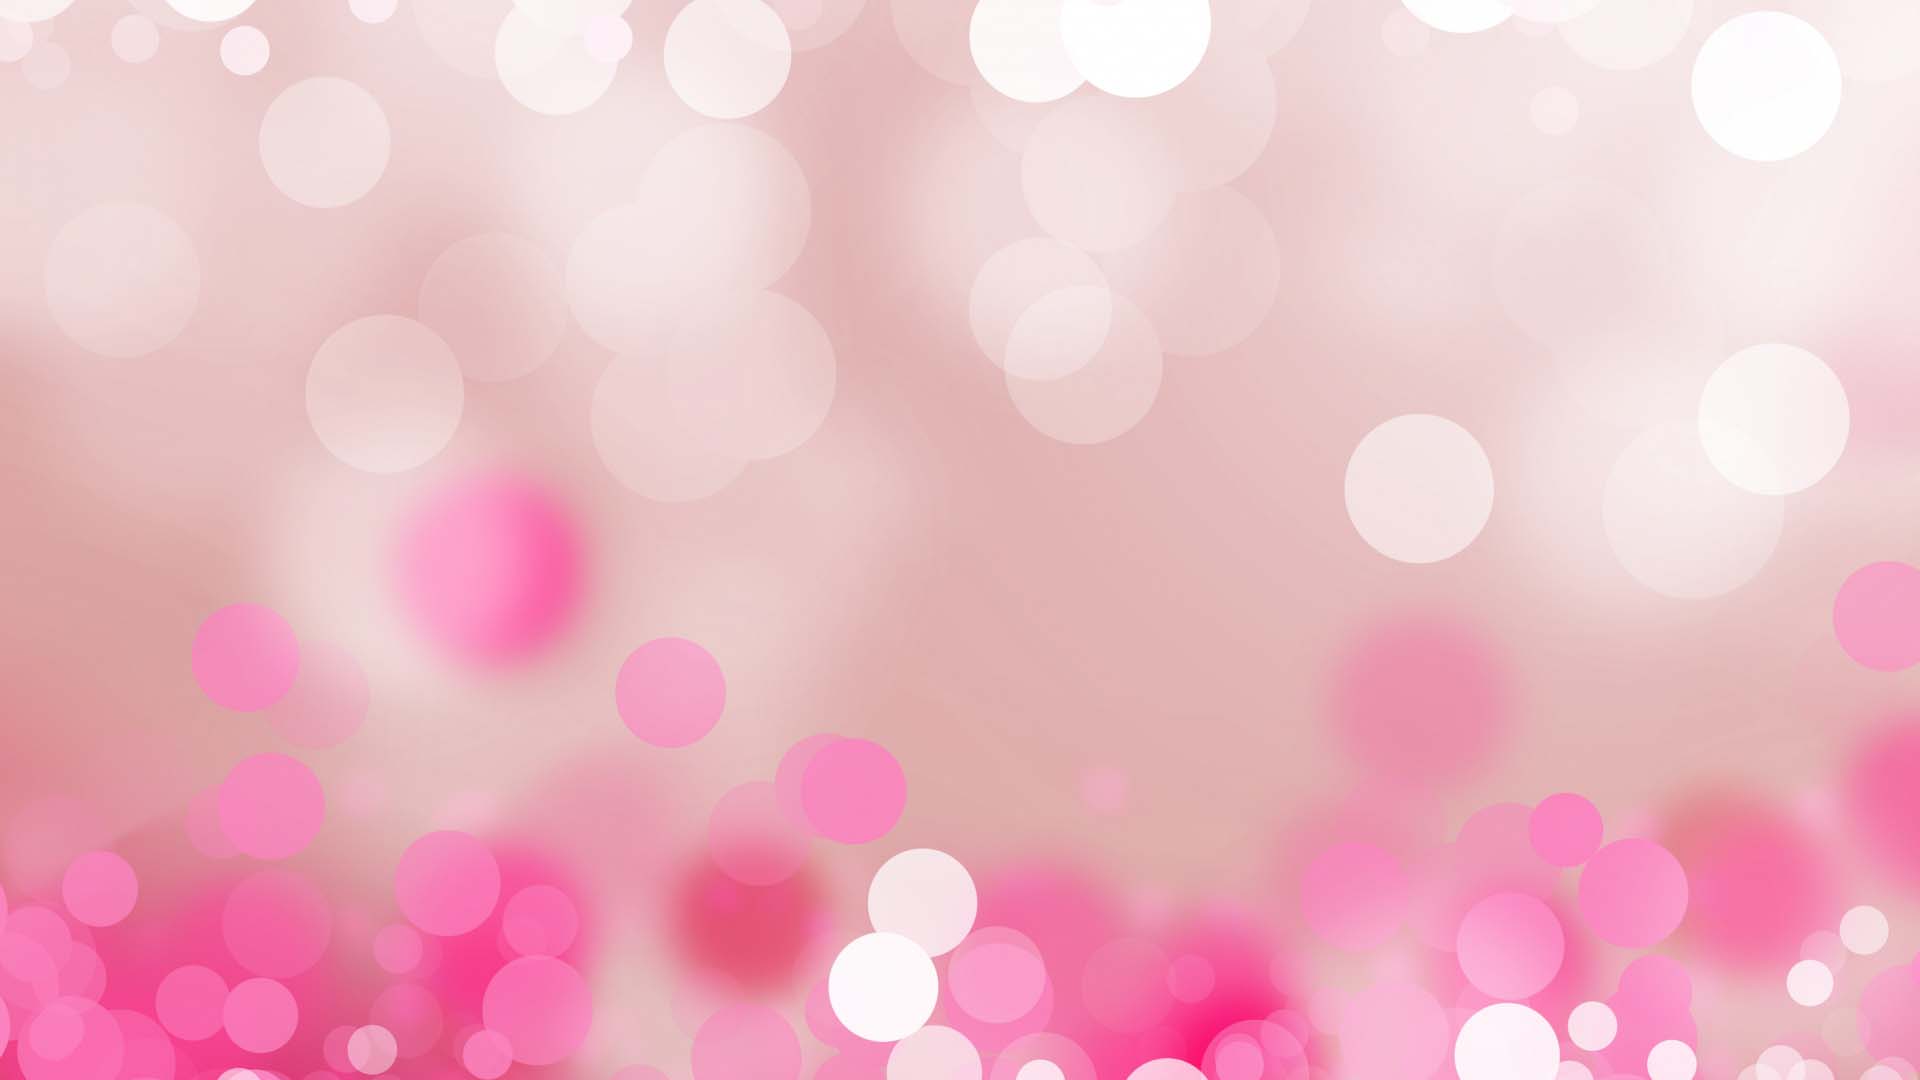 Màu hồng tươi tắn và đậm đà đã trở thành biểu tượng của sự nữ tính và sáng tạo. Nếu bạn là một người yêu thích màu hồng, hãy xem những hình nền màu hồng đẹp để trang trí cho chiếc điện thoại của mình. Sự kết hợp giữa màu hồng và họa tiết độc đáo sẽ khiến bạn thực sự nổi bật và đẹp hơn.